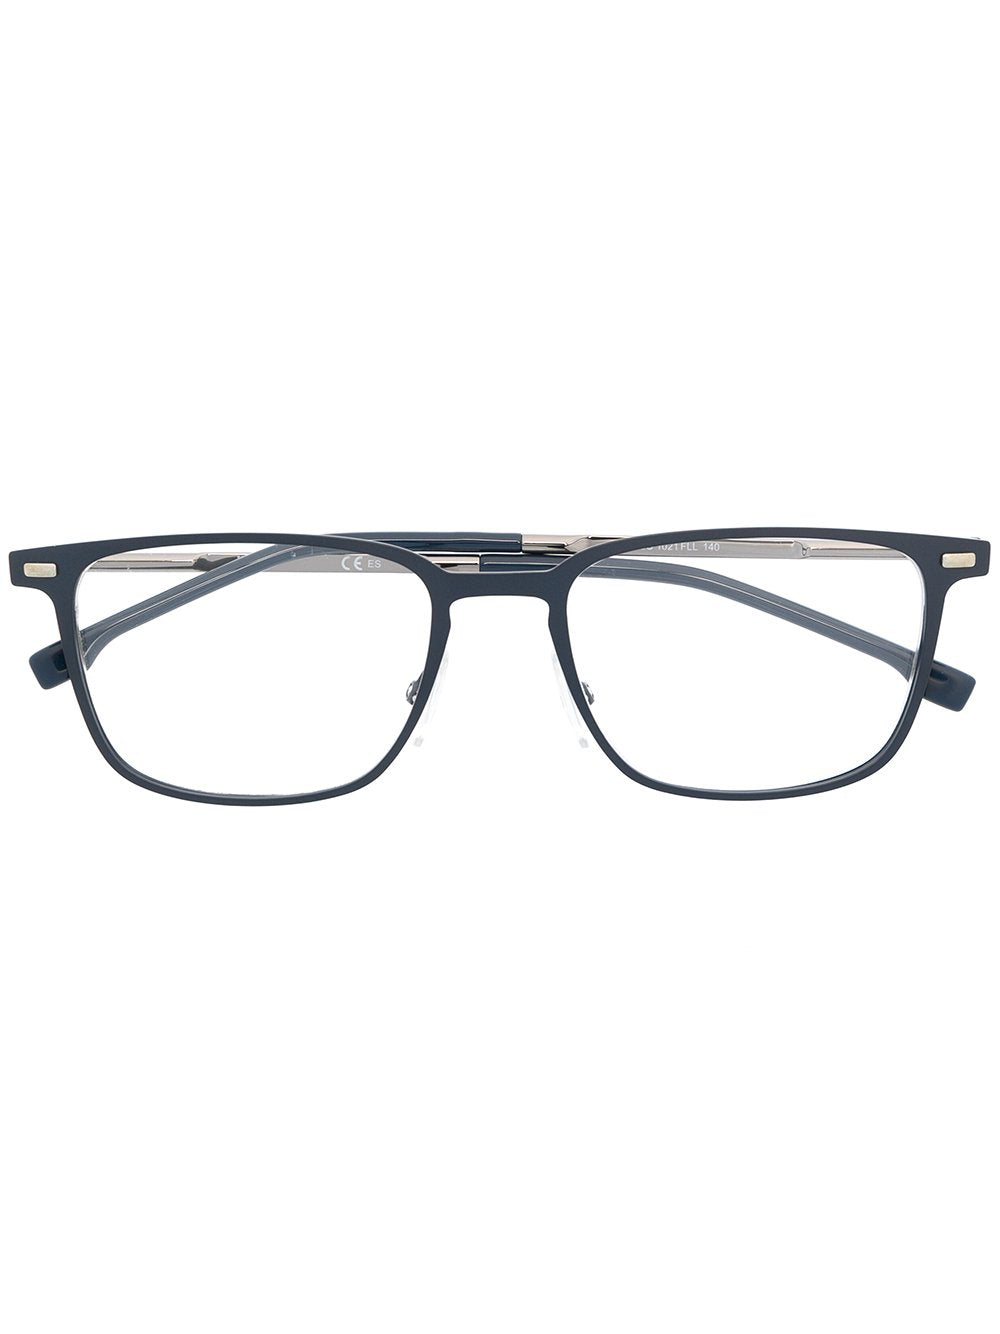 BOSS UNISEX Stainless steel / Acetate Glasses & Frames 